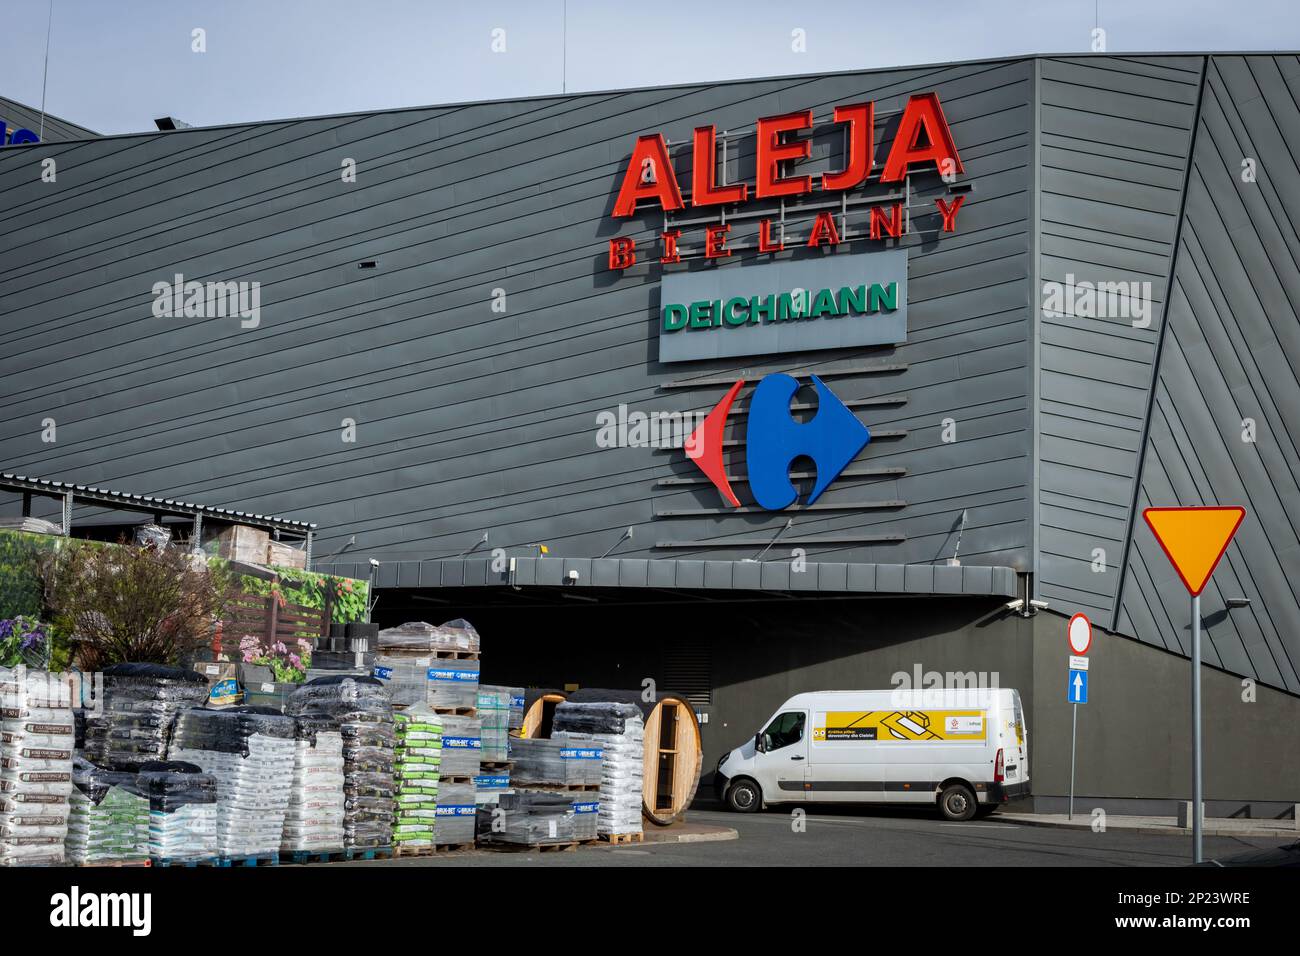 Wroclaw, Pologne - 20 février 2023: Aleja Bielany centre commercial bâtiment. Banque D'Images